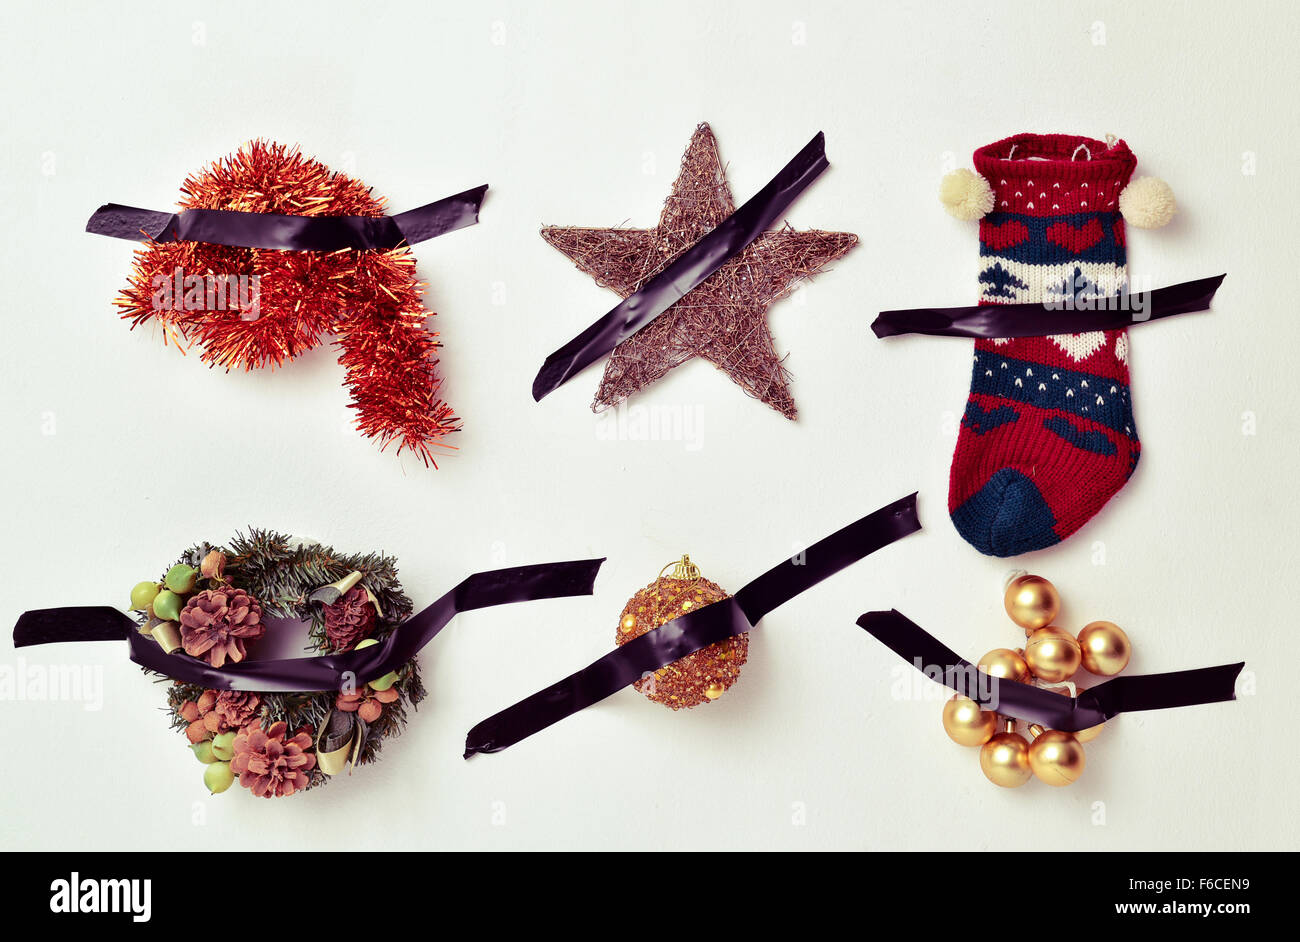 Alcune diverse decorazioni di Natale, come tinsel, una stella, una calza o baubles, attaccato ad una parete bianca con nastro nero Foto Stock